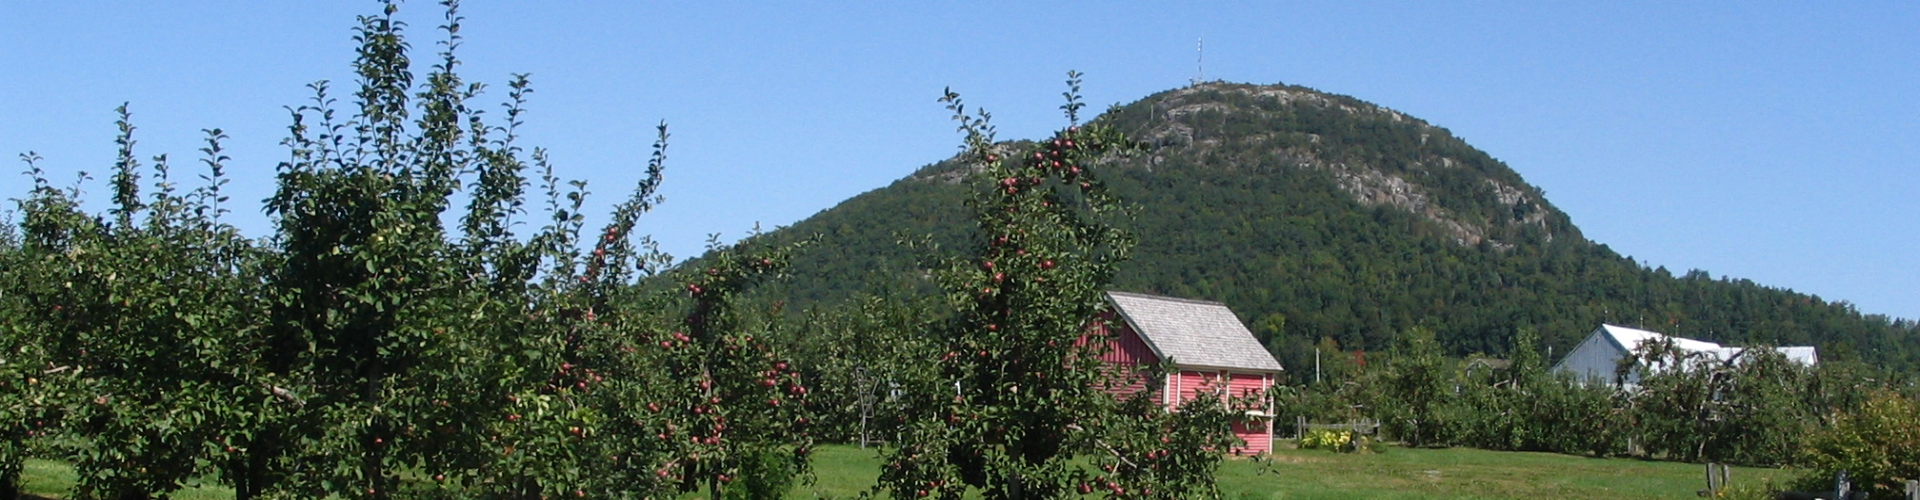 Mont-Saint-Grégoire